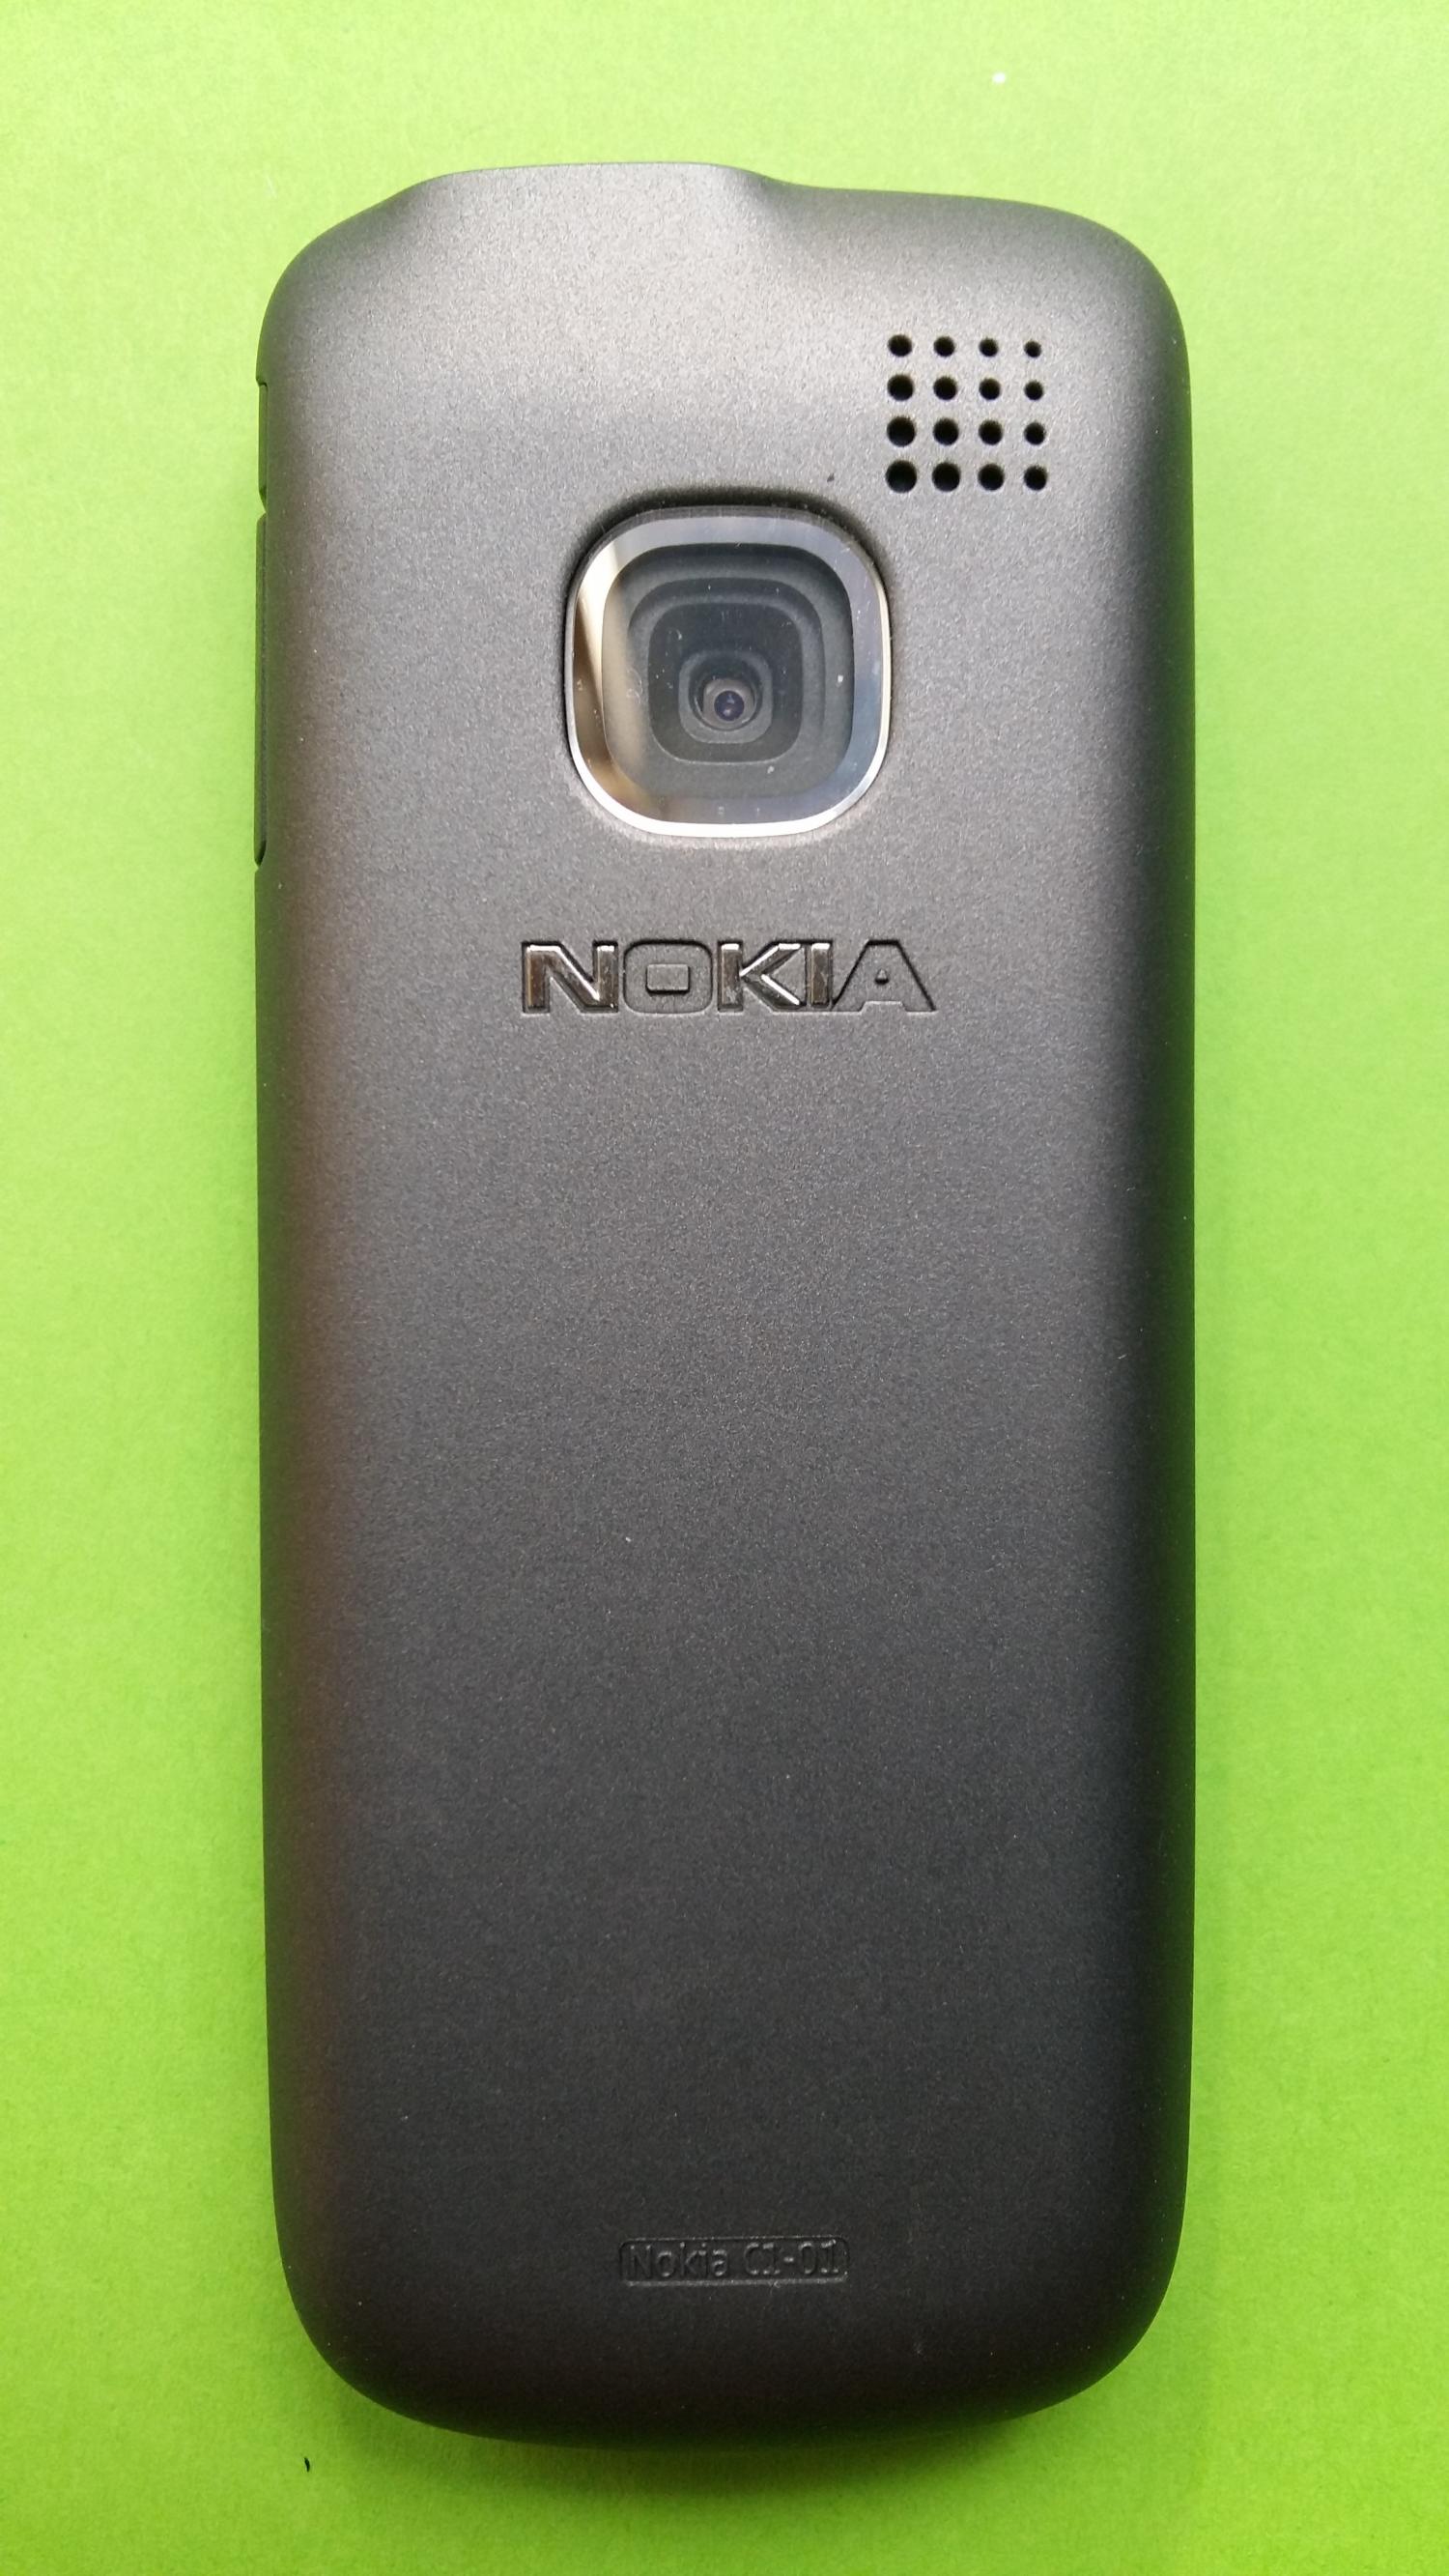 image-7308740-Nokia C1-01 (3)2.jpg